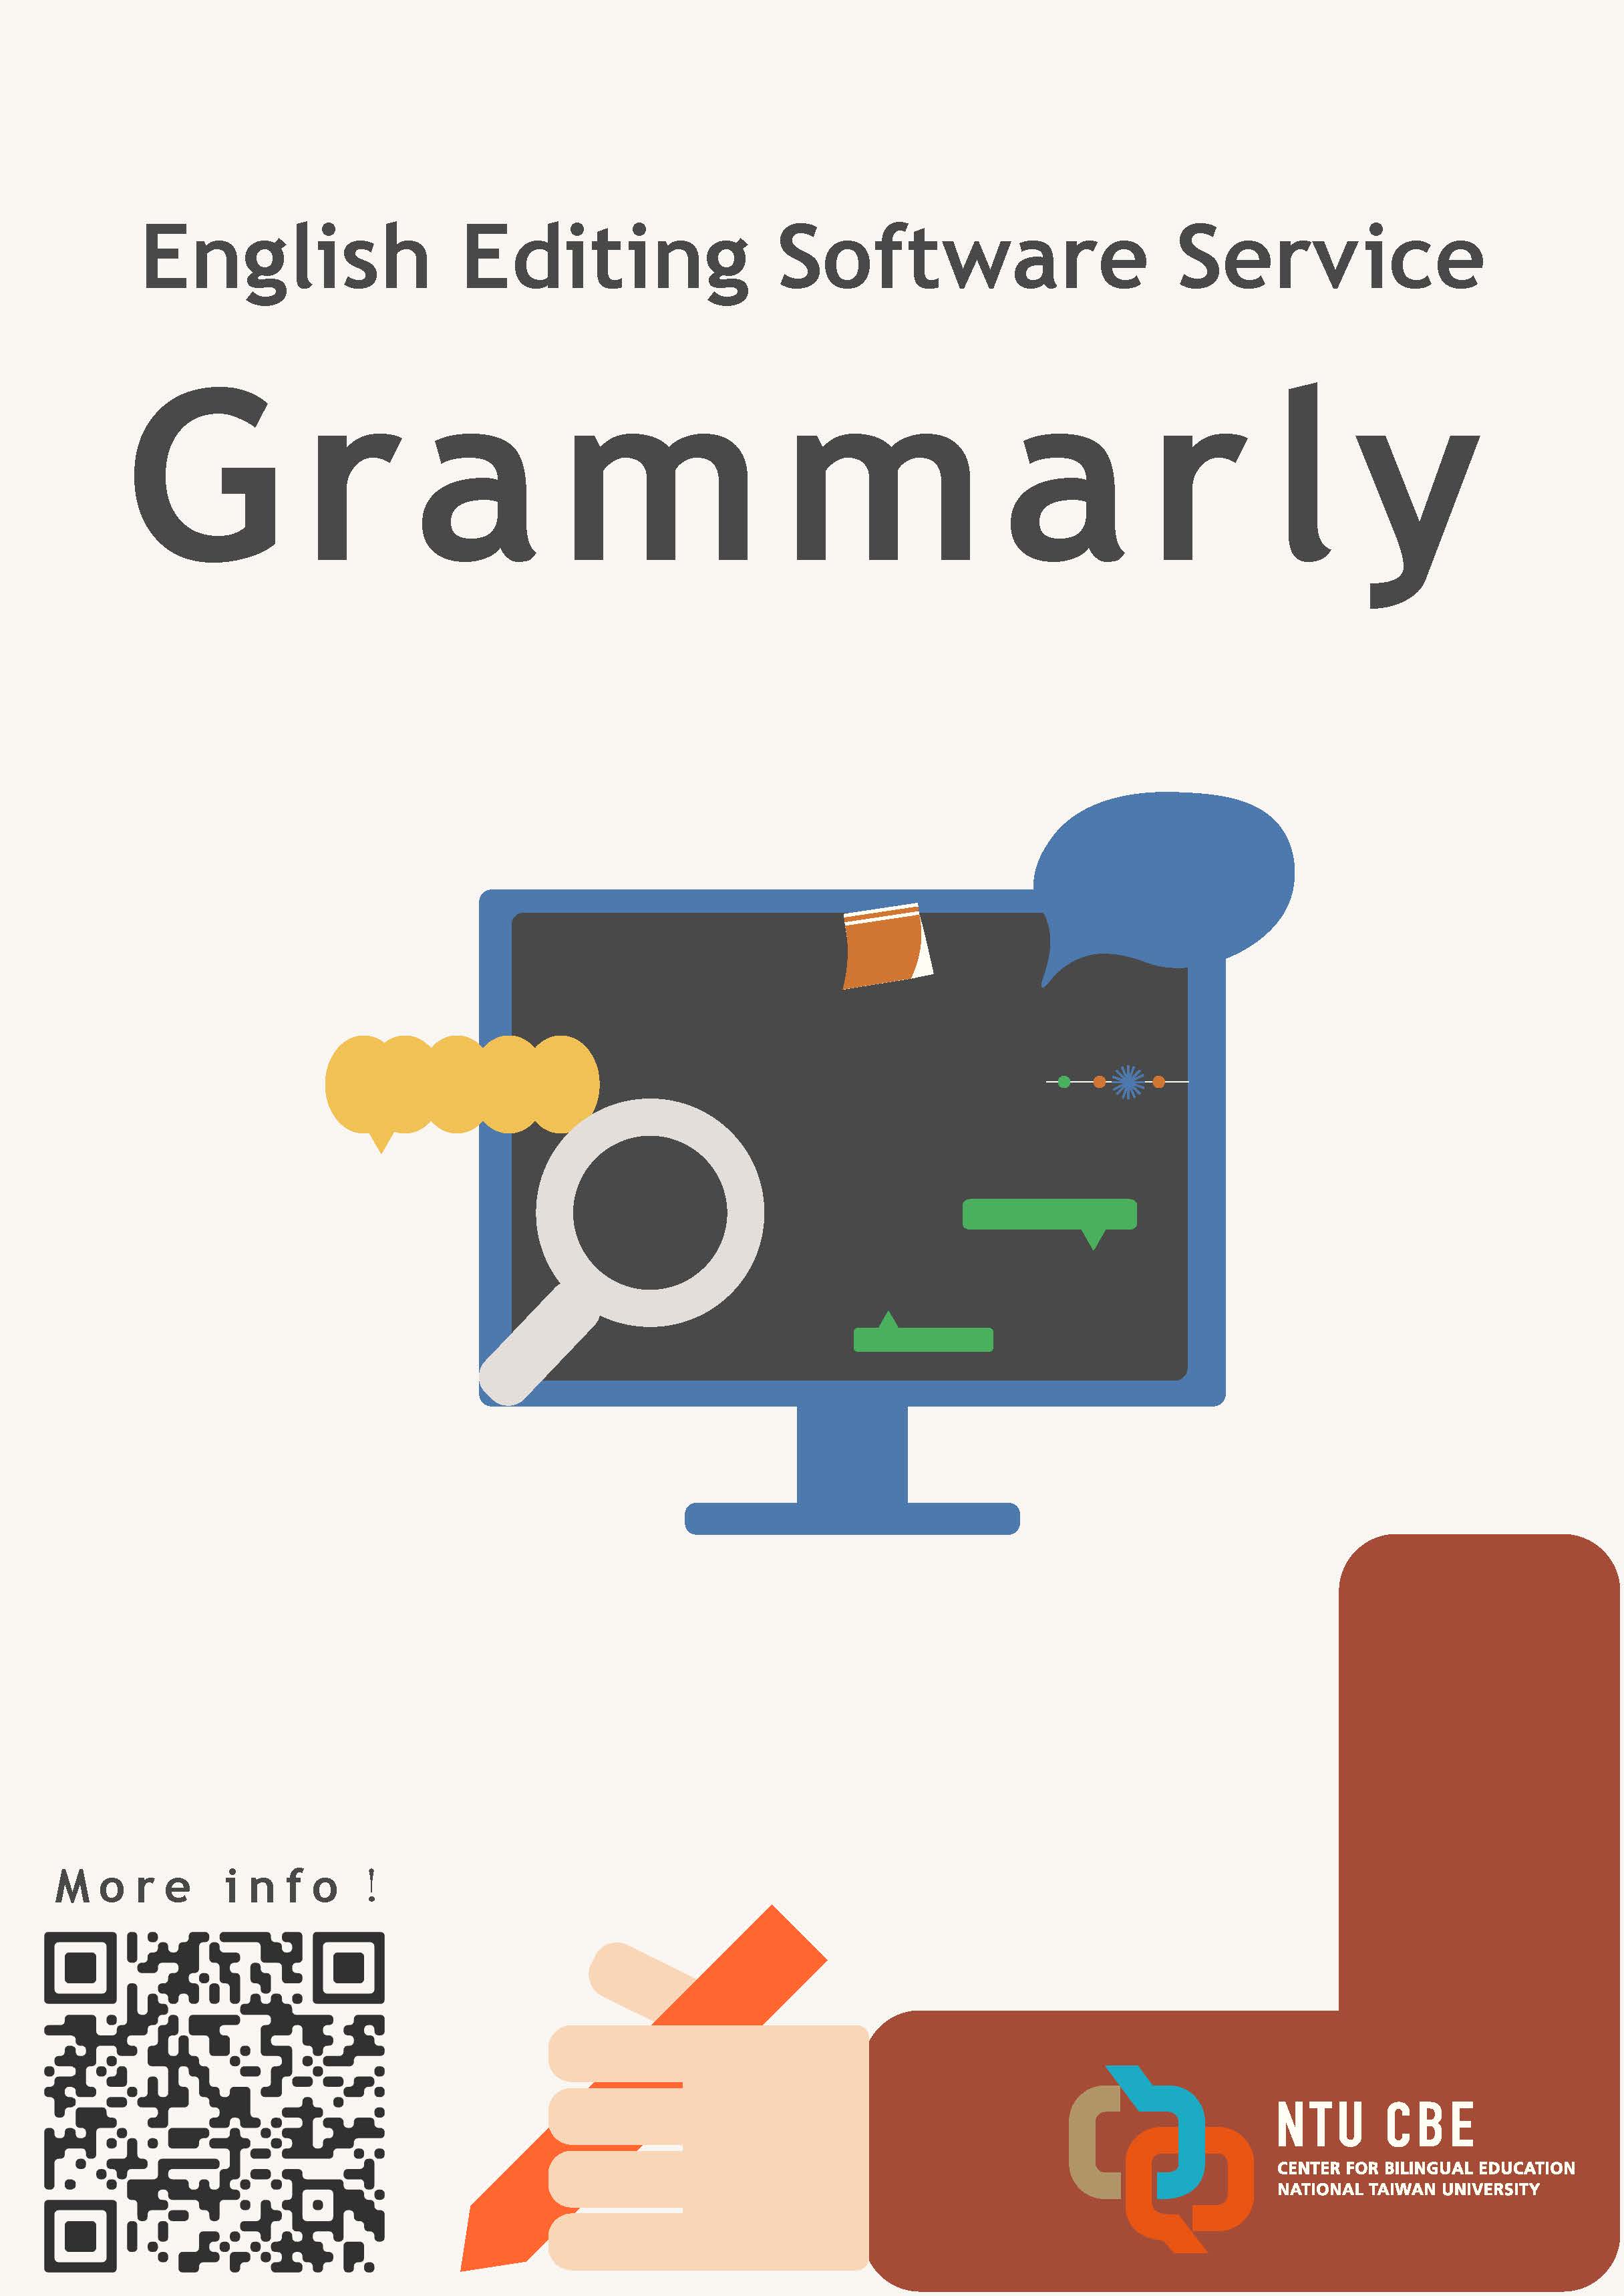 雙語教育中心提供英語編修軟體Grammarly.com帳號申請，歡迎踴躍申請，額滿為止！